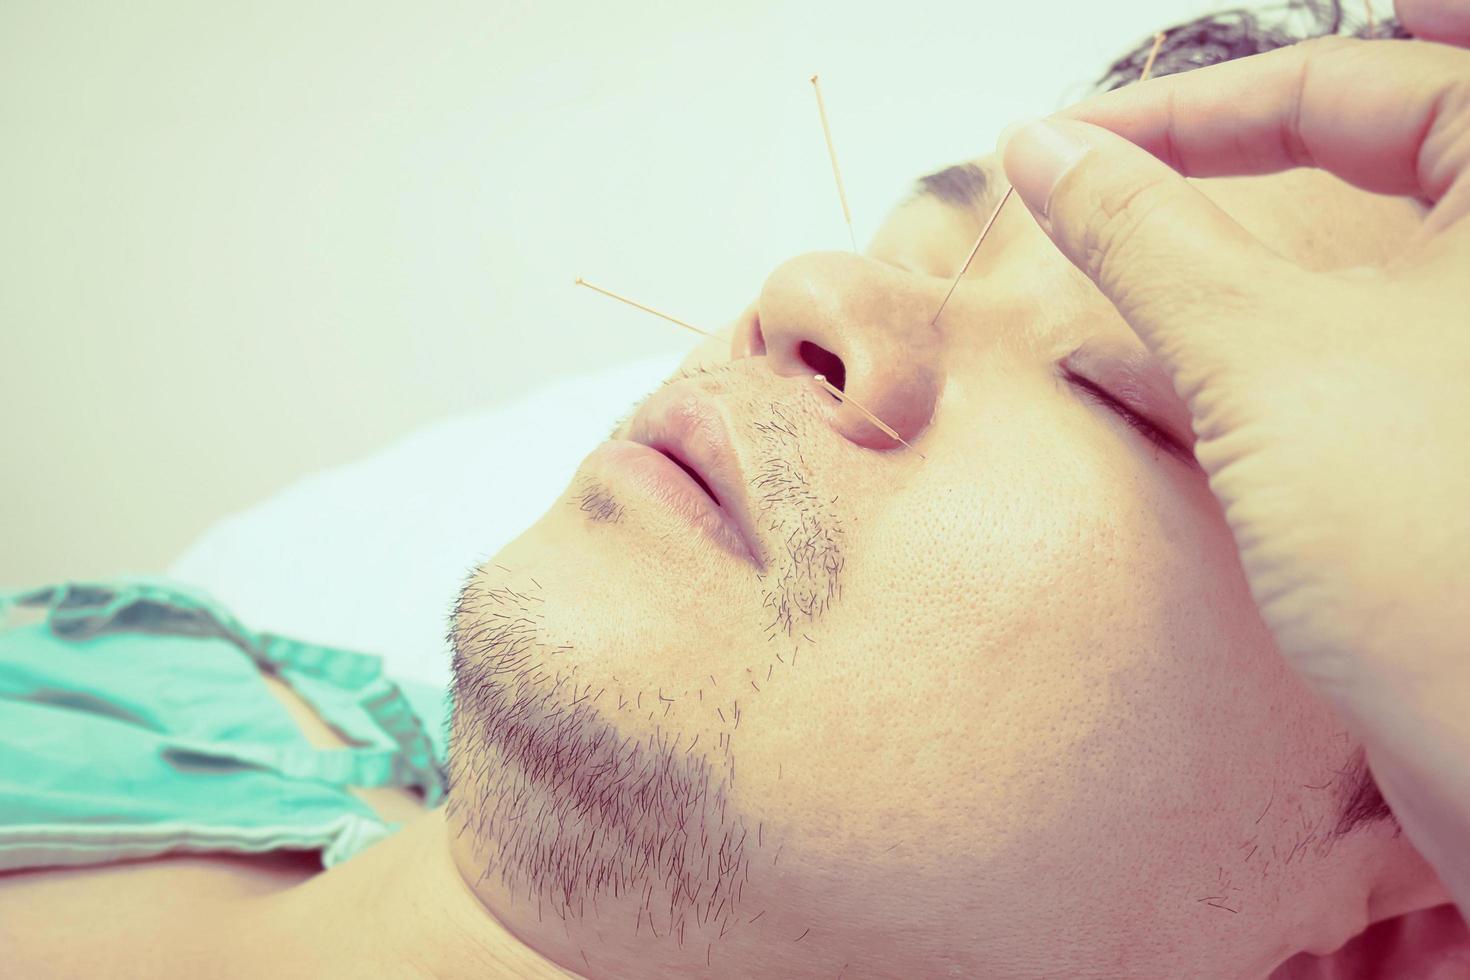 foto de estilo vintage de un hombre asiático enfocado selectivo que está recibiendo tratamiento de acupuntura